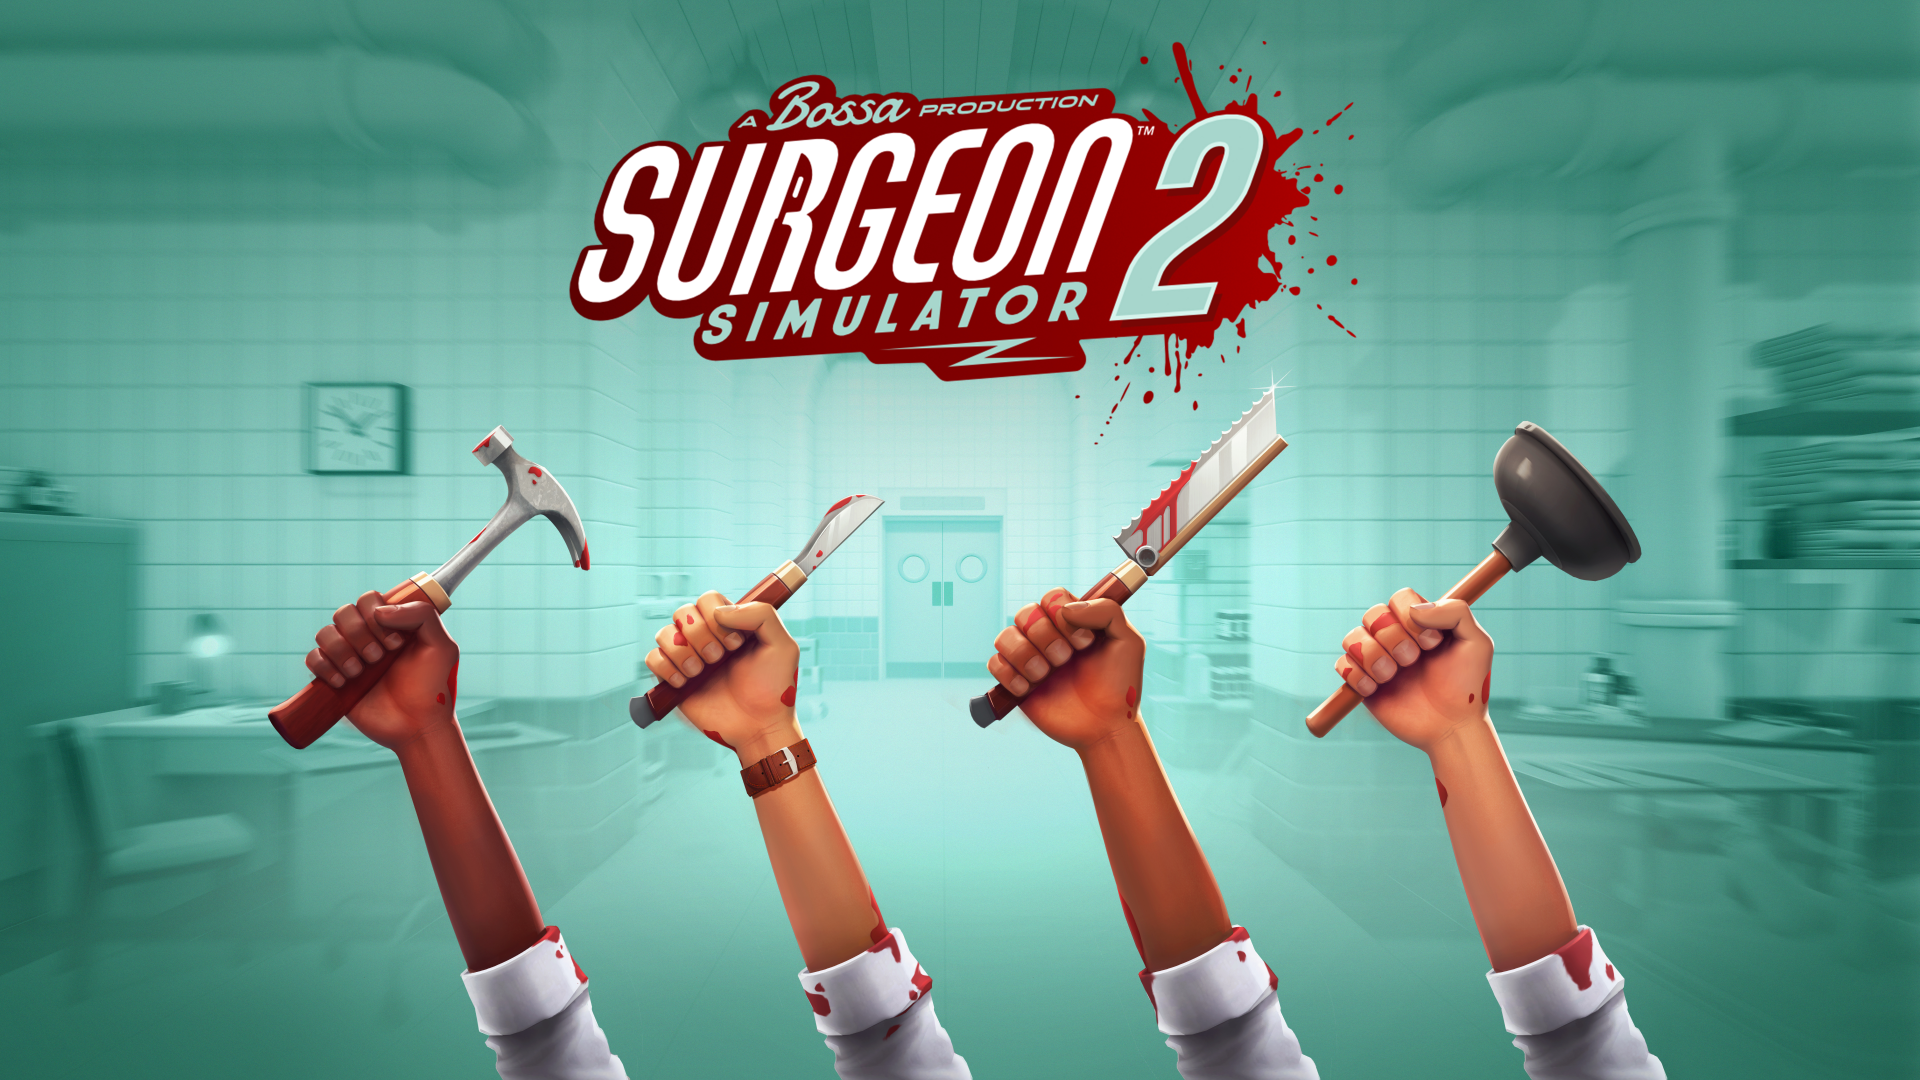 「PC Gaming Show 2020」にて『Surgeon Simulator 2』の
ゲームプレイ・トレイラーを公開　
～全容が明らかに！日本語にも対応！～